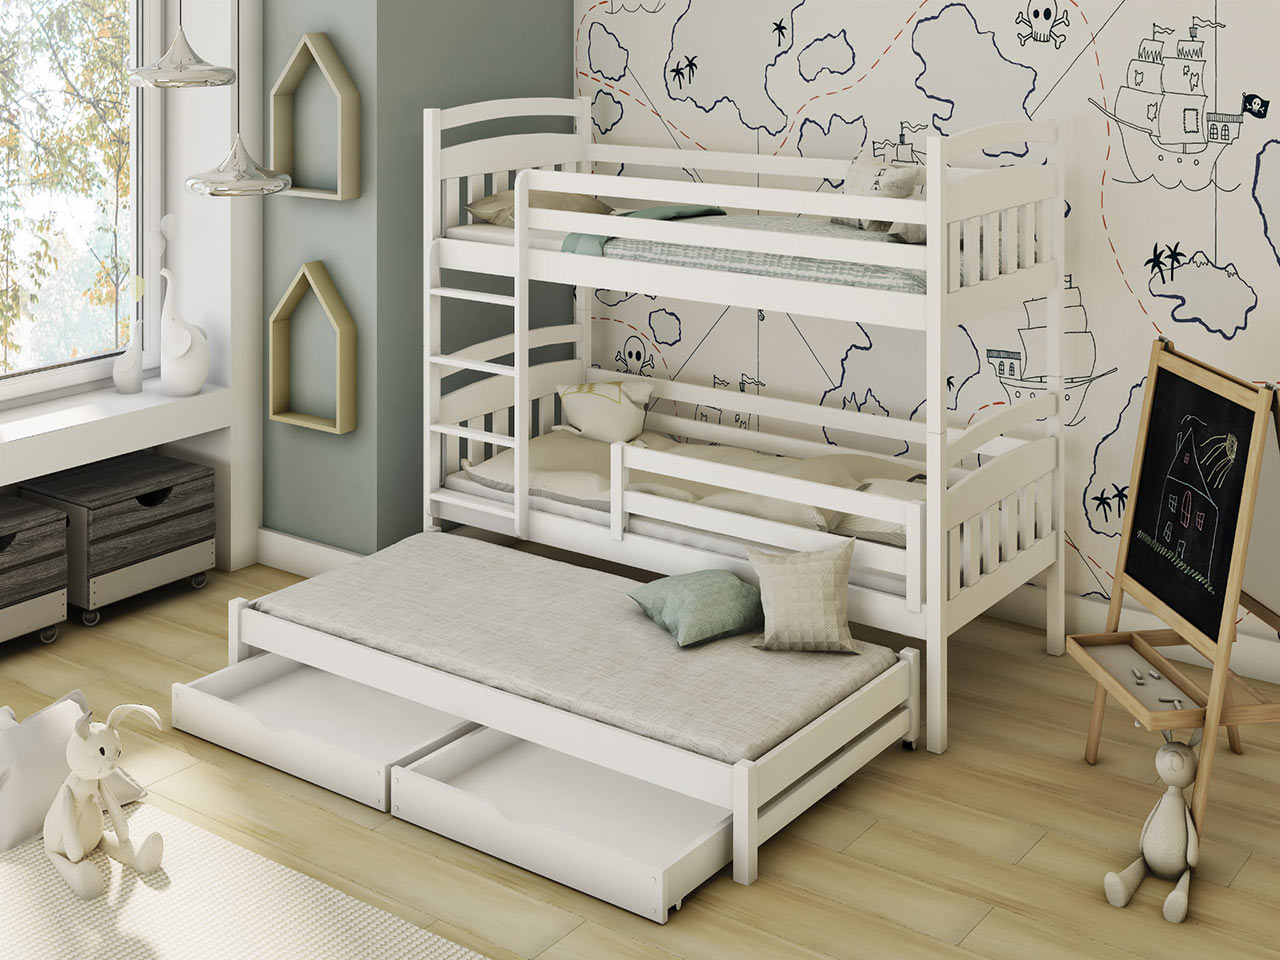 Poschodová posteľ je ideálna voľba do spoločnej izbičky pre súrodencov